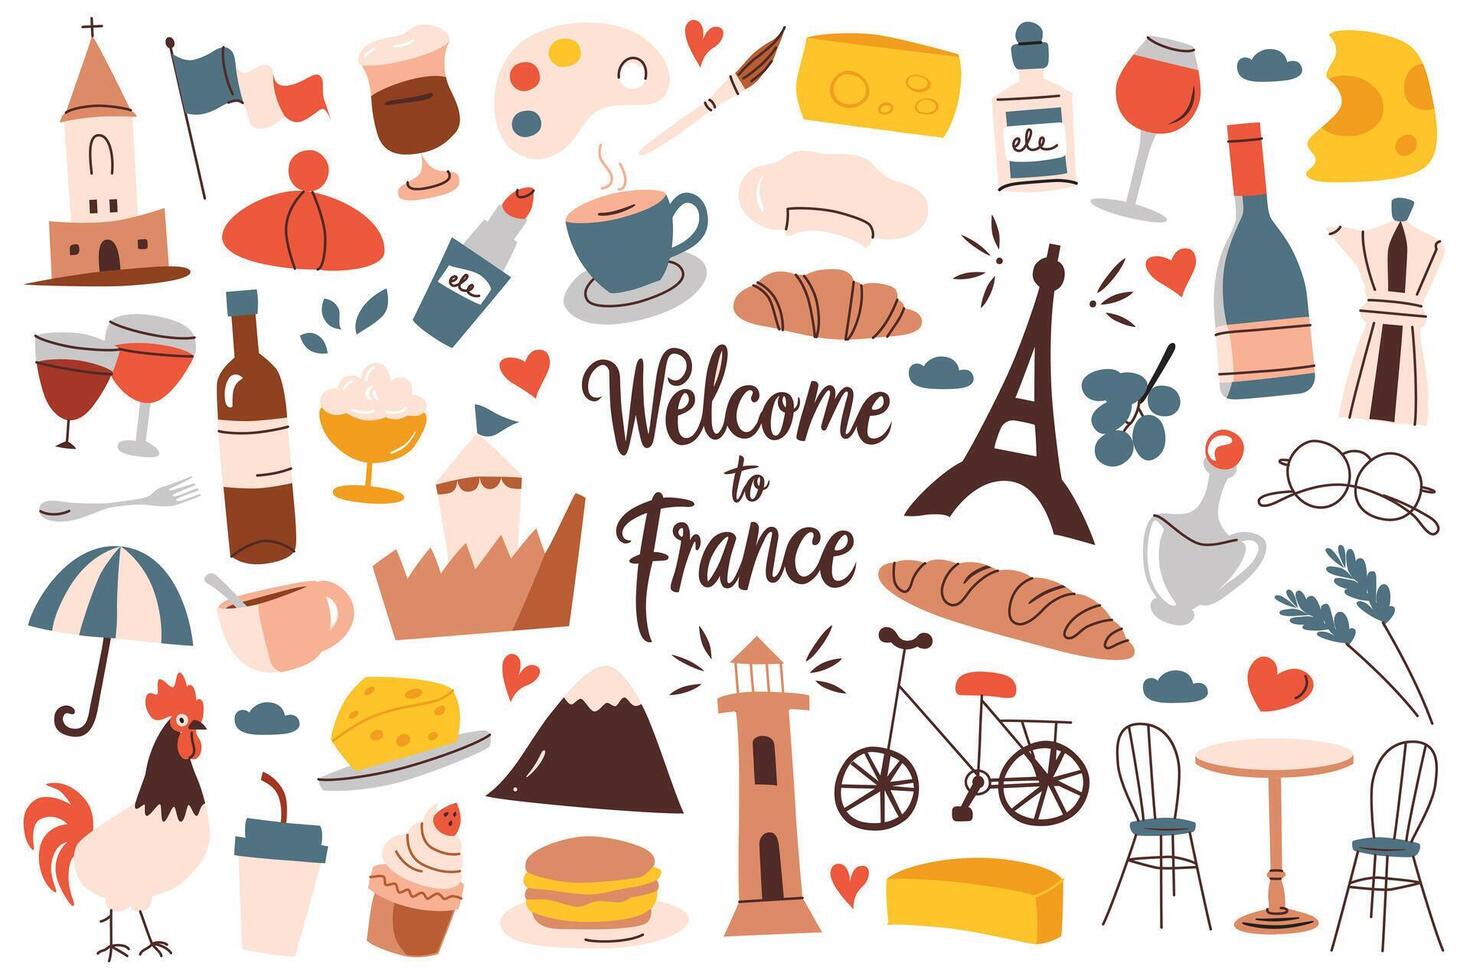 Frankrijk symbolen hand- getrokken verzameling, pictogrammen van eifel toren, kaas, croissant, op reis in Parijs, toerisme illustraties, beroemd Frans bezienswaardigheden bekijken, reeks van wijn en vlag doodles vector